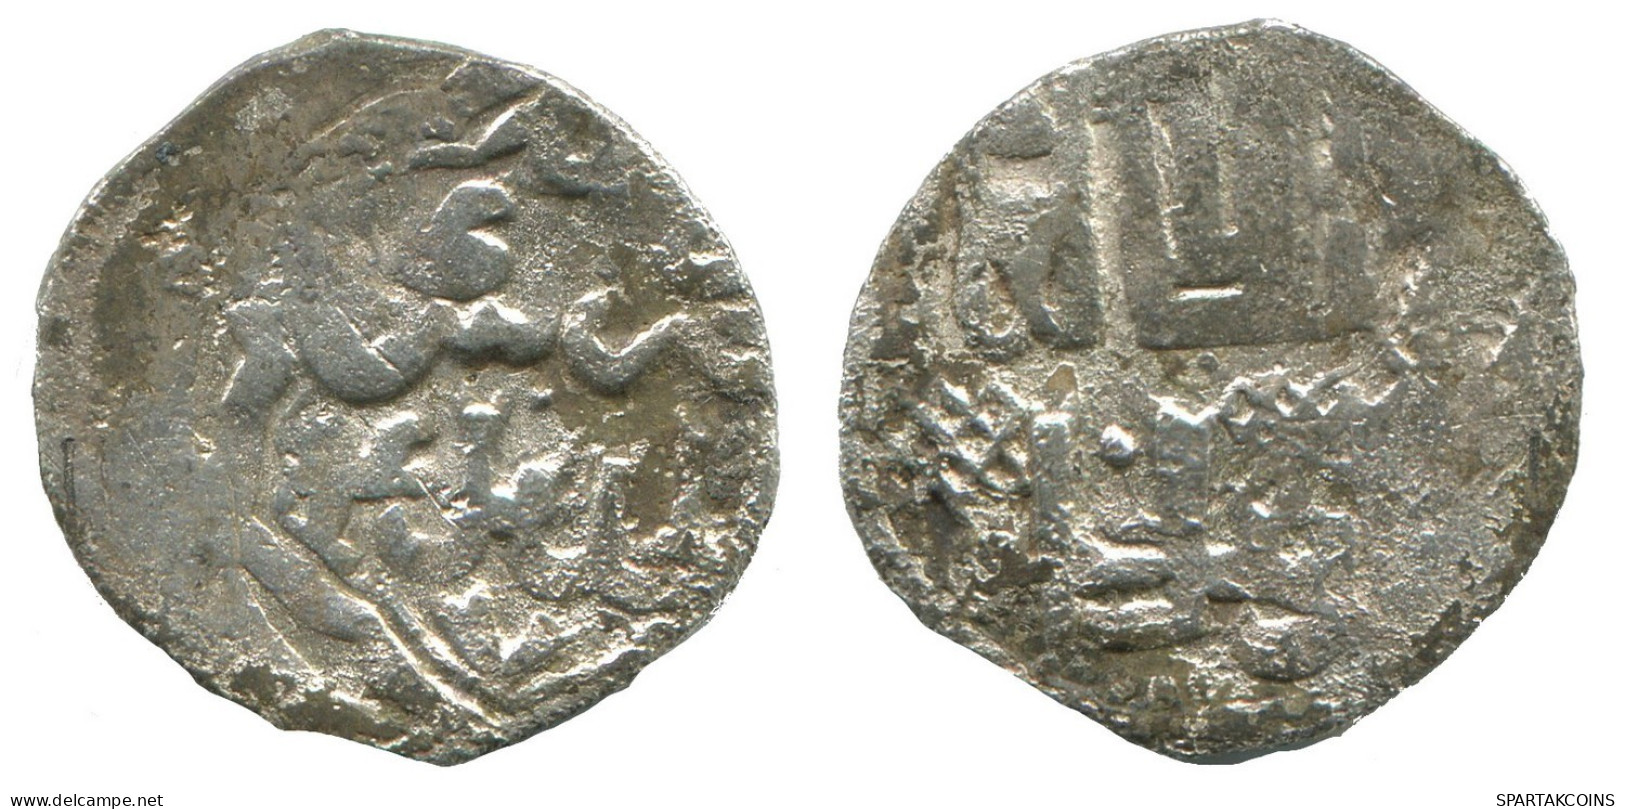 GOLDEN HORDE Silver Dirham Medieval Islamic Coin 1.5g/16mm #NNN2021.8.F.A - Islamitisch